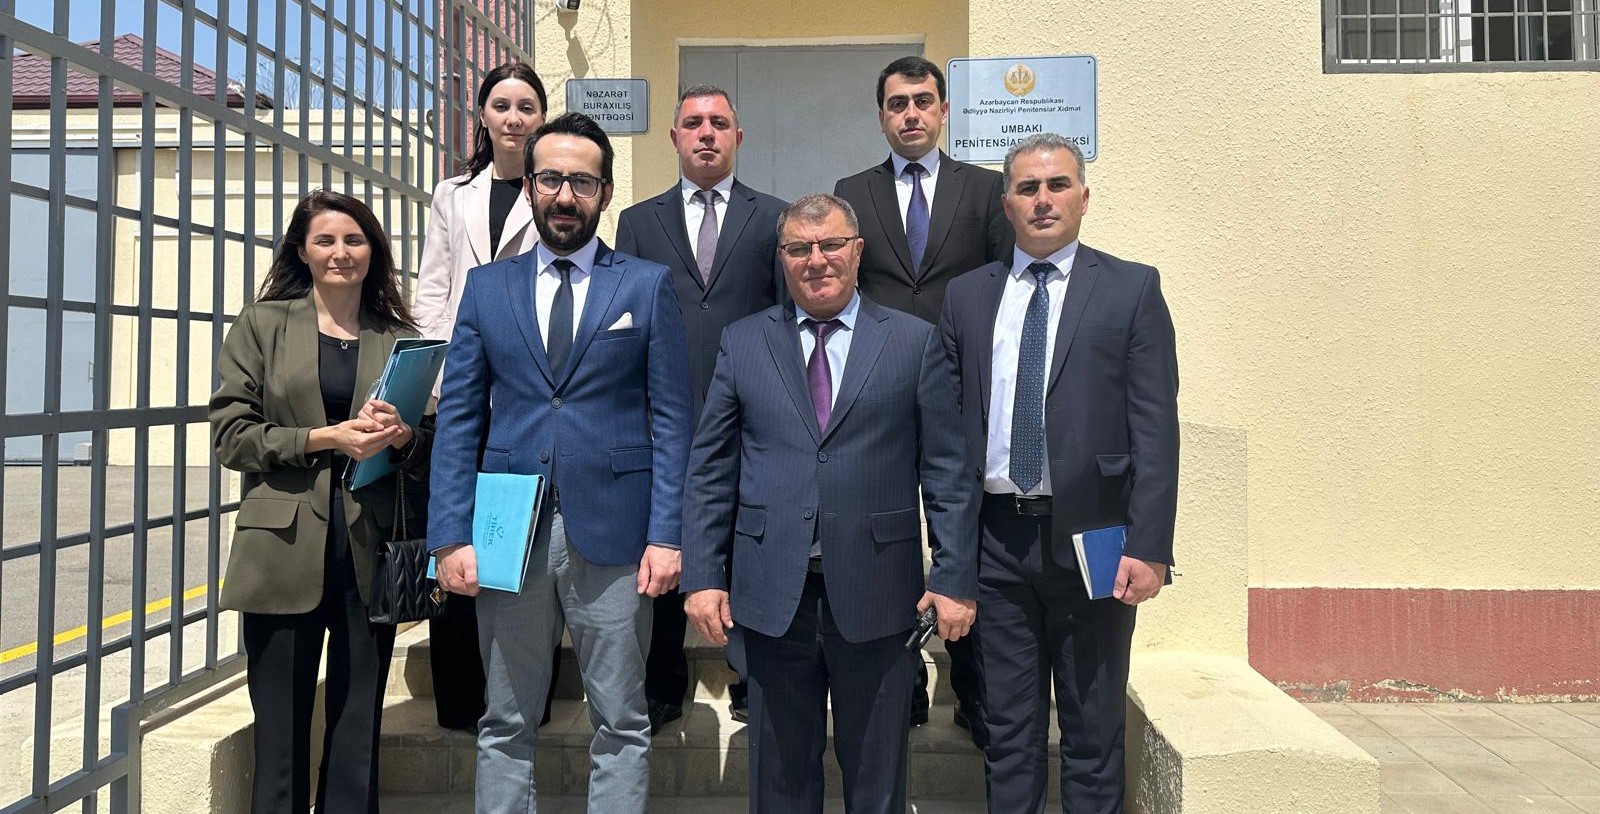 Kurumumuz Heyeti Azerbaycan Ulusal Önleme Mekanizmasıyla Ortak Ziyaret Gerçekleştirdi